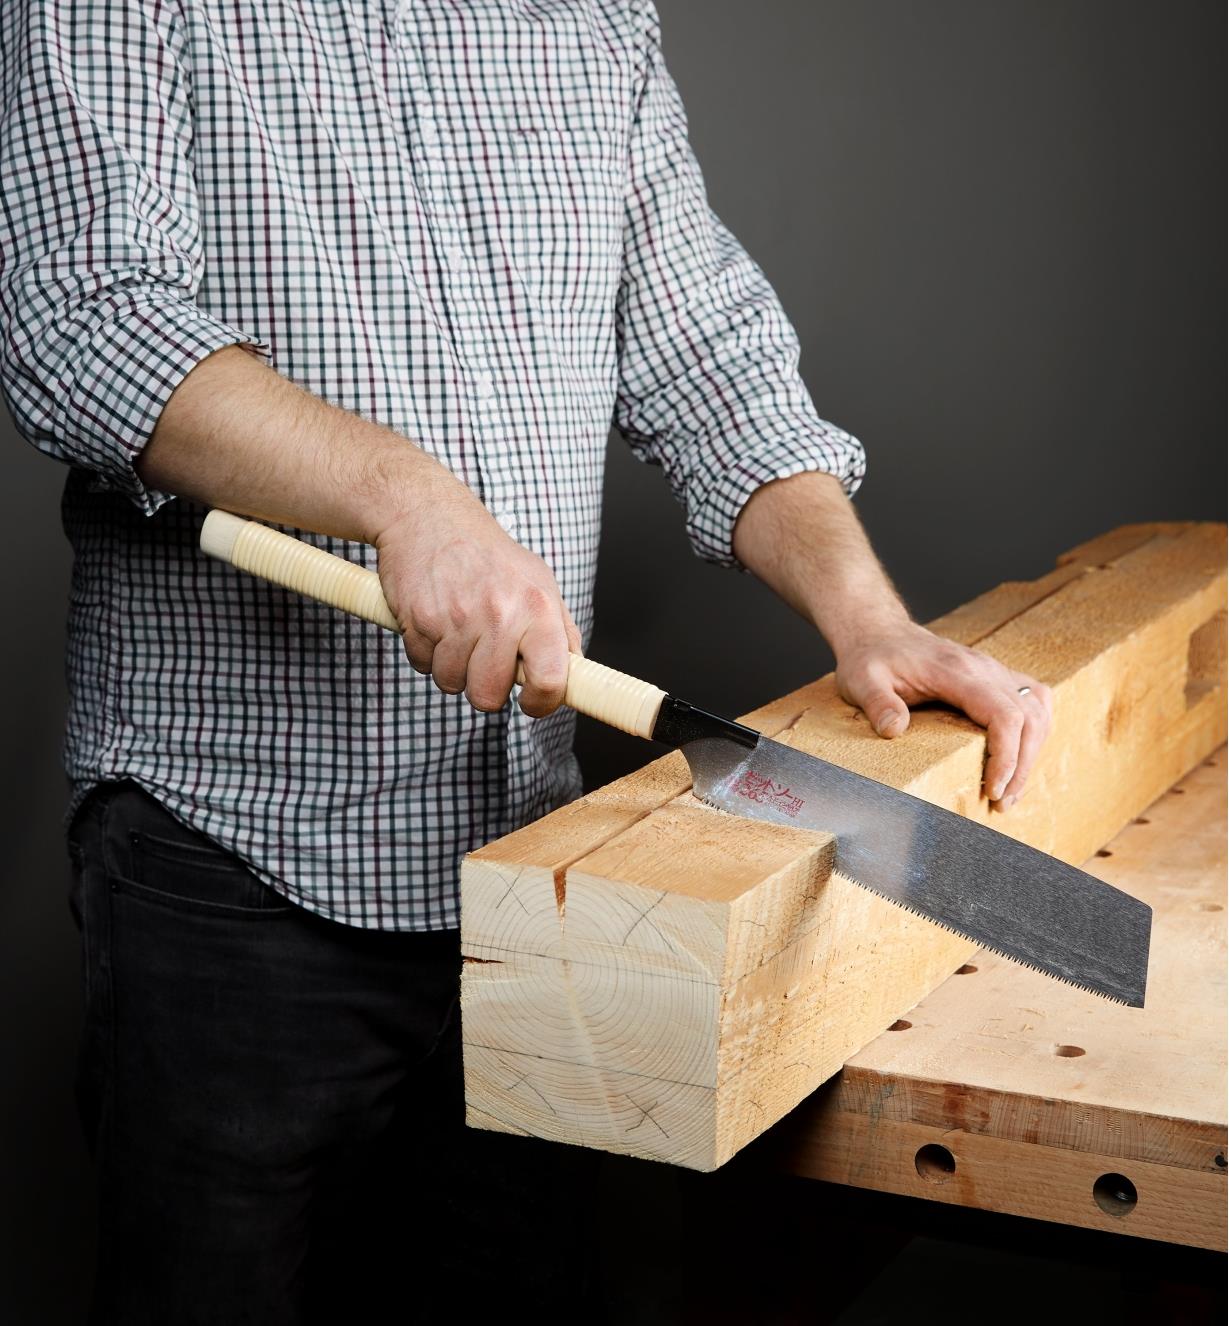 Personne effectuant une coupe dans une épaisse poutre en bois avec la scie kataba convexe à tronçonner